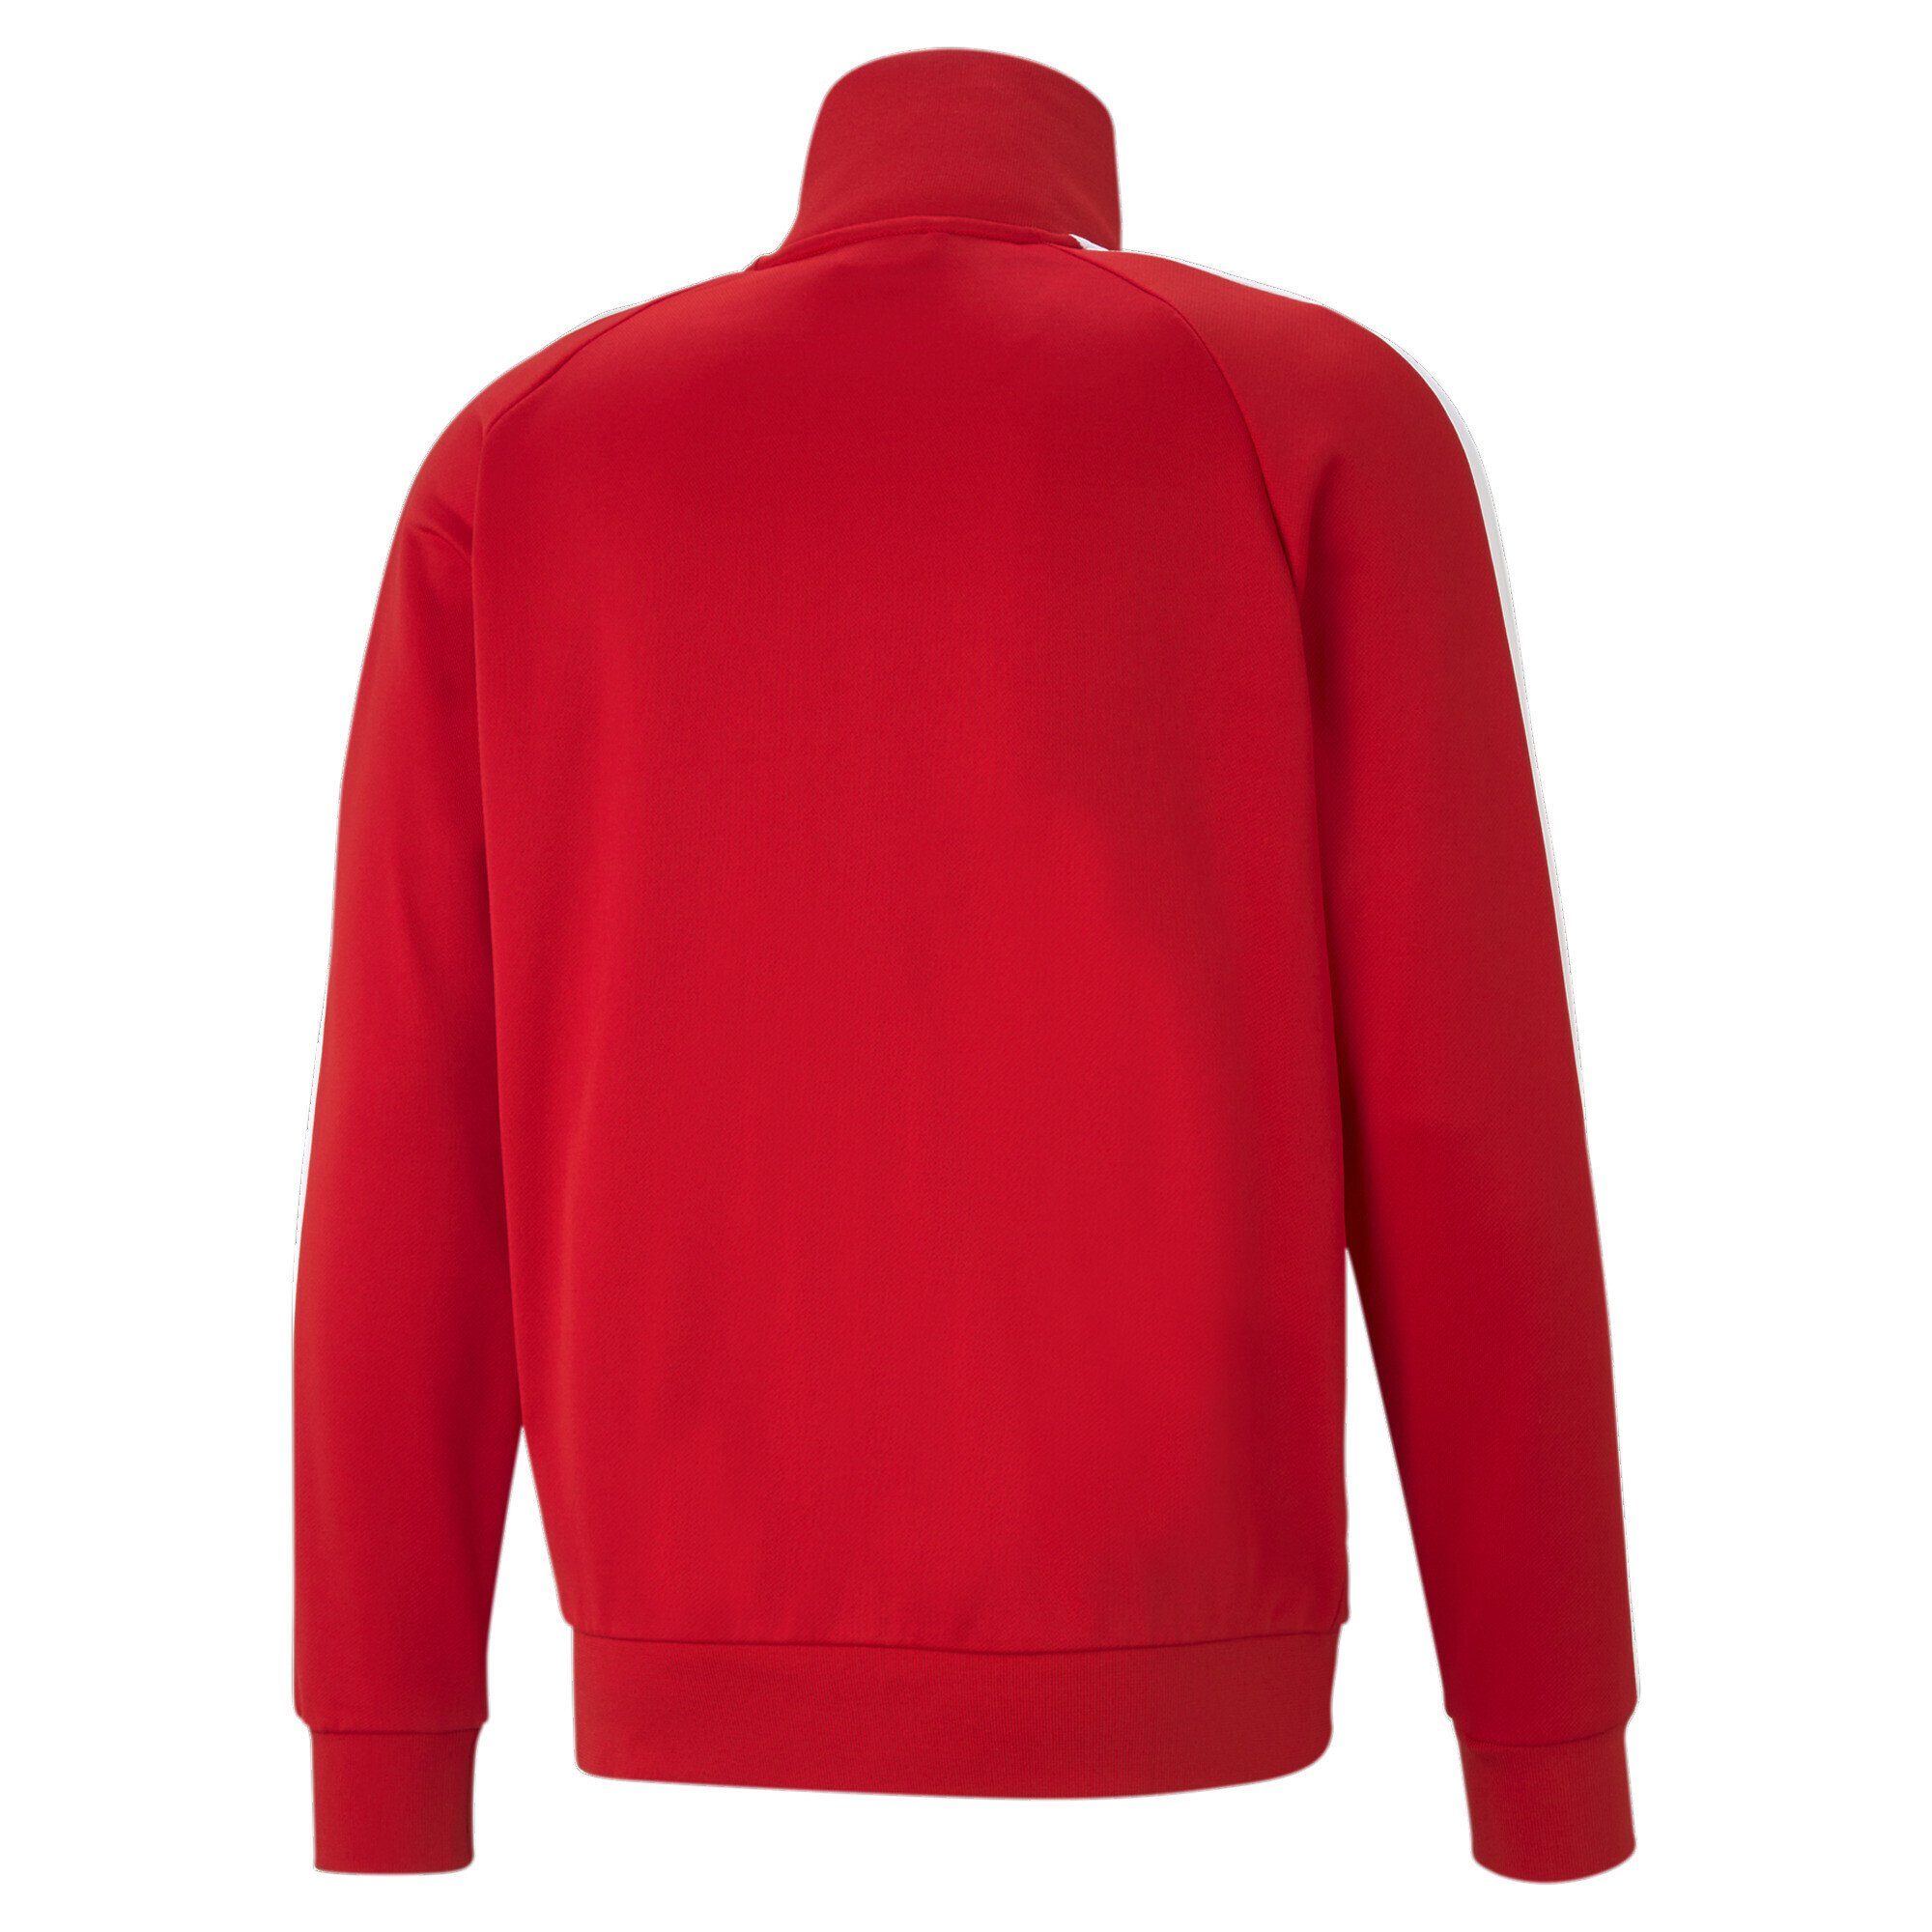 PUMA Herren T7 High Risk Trainingsjacke Trainingsjacke Red Iconic